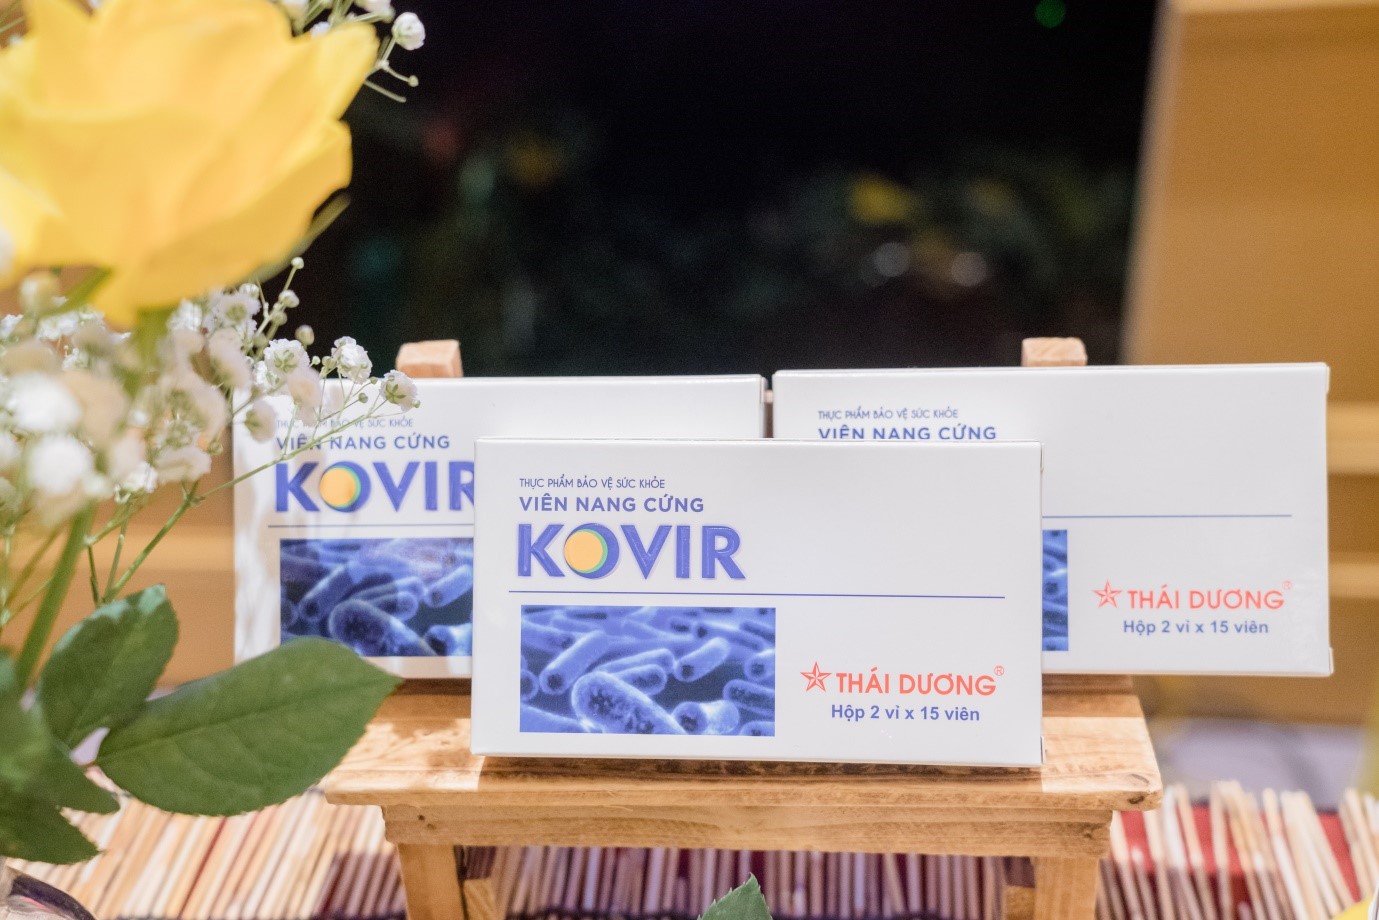 Viên nang cứng Kovir đã được tiến hành nghiên cứu lâm sàng sử dụng cho bệnh nhân COVID-19